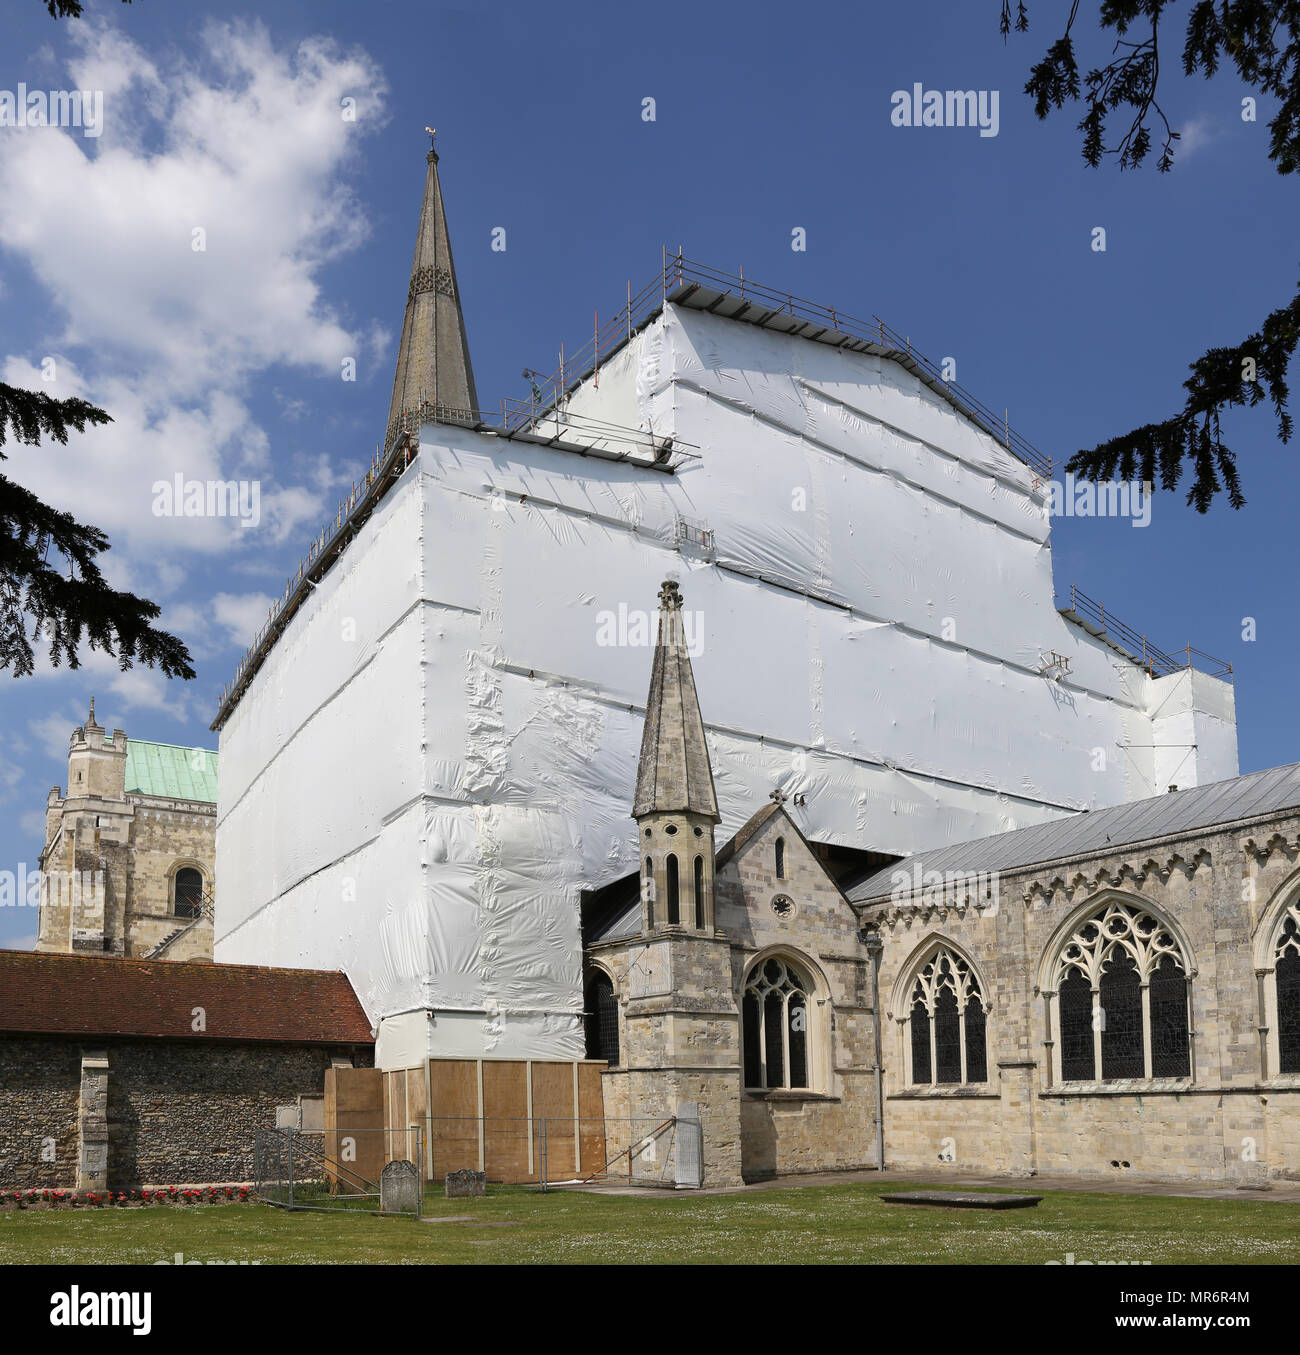 Einrüstung umgibt den Chor an der Kathedrale von Chichester, West Sussex. Die Struktur bietet Zugriff und Wetterschutz für große Dach Reparaturen. Stockfoto